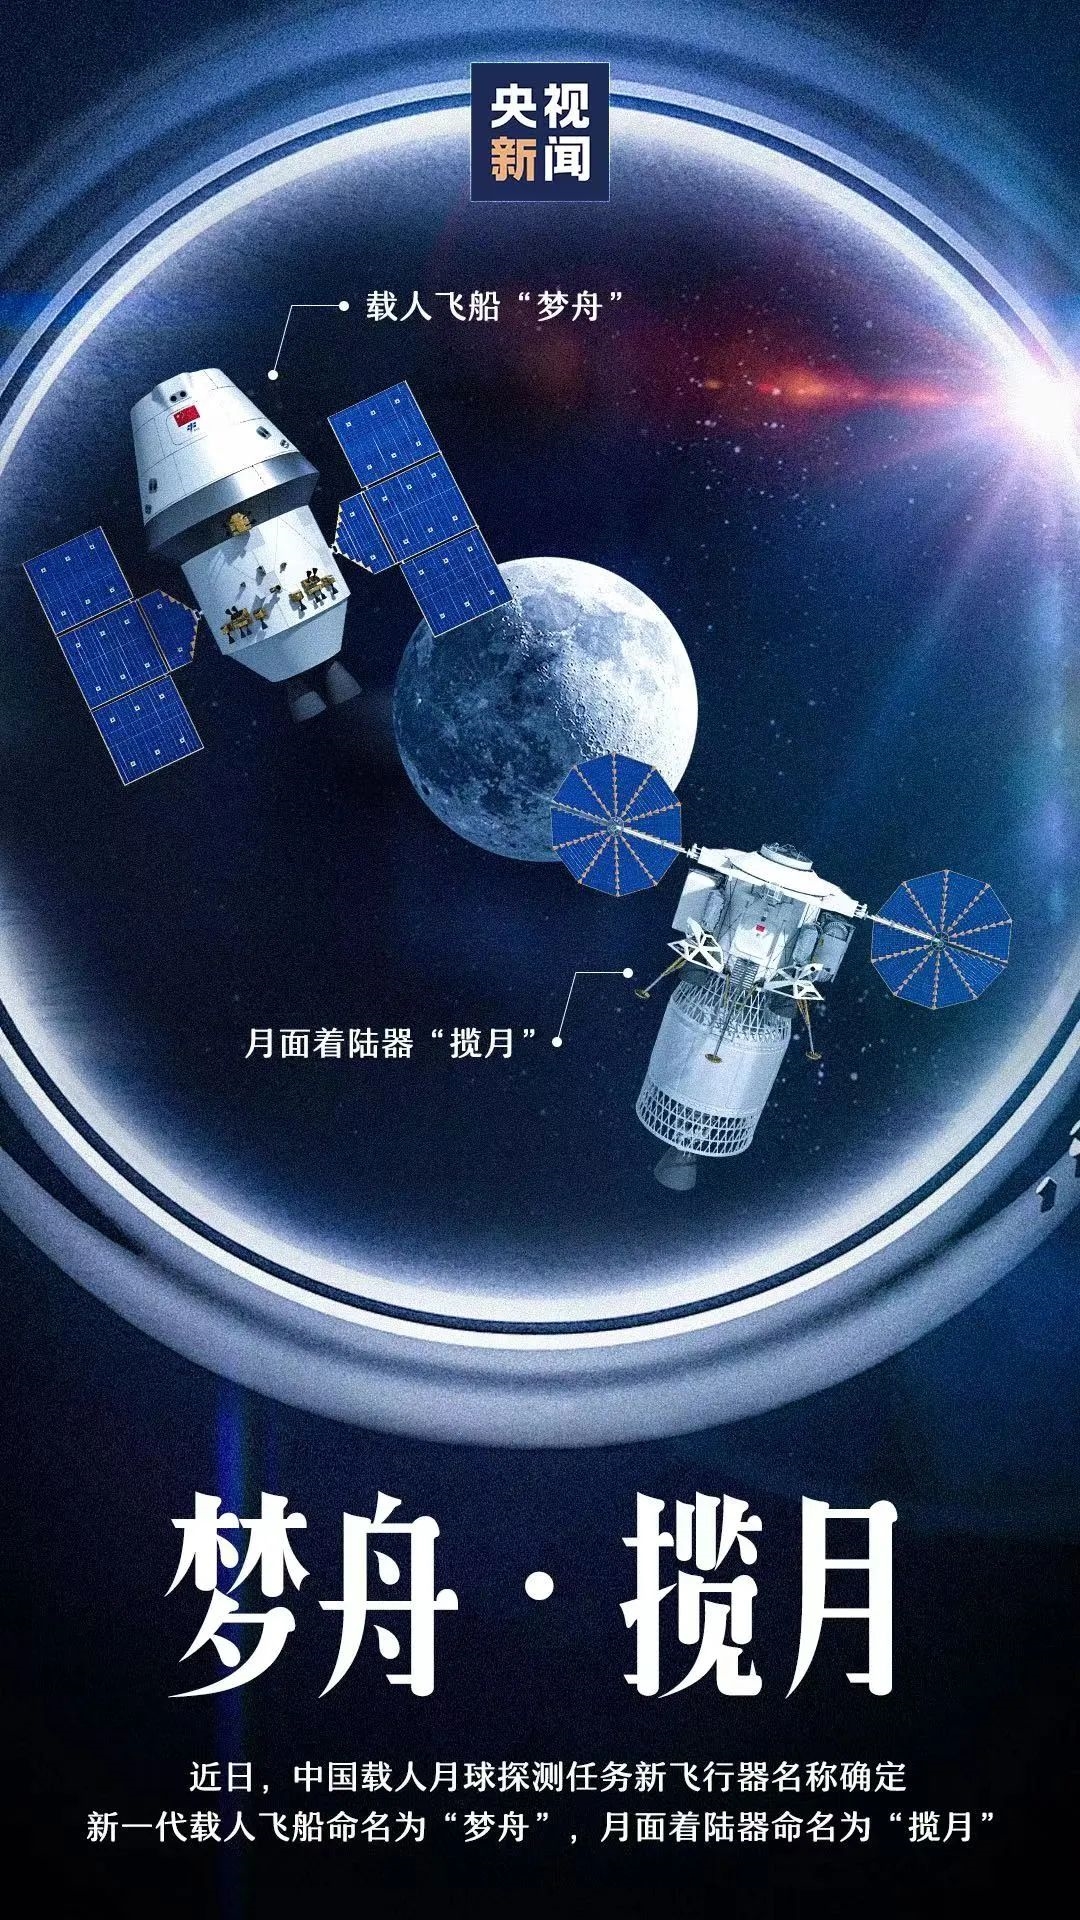 中国新一代载人飞船命名为“梦舟”：登月、空间站都能用